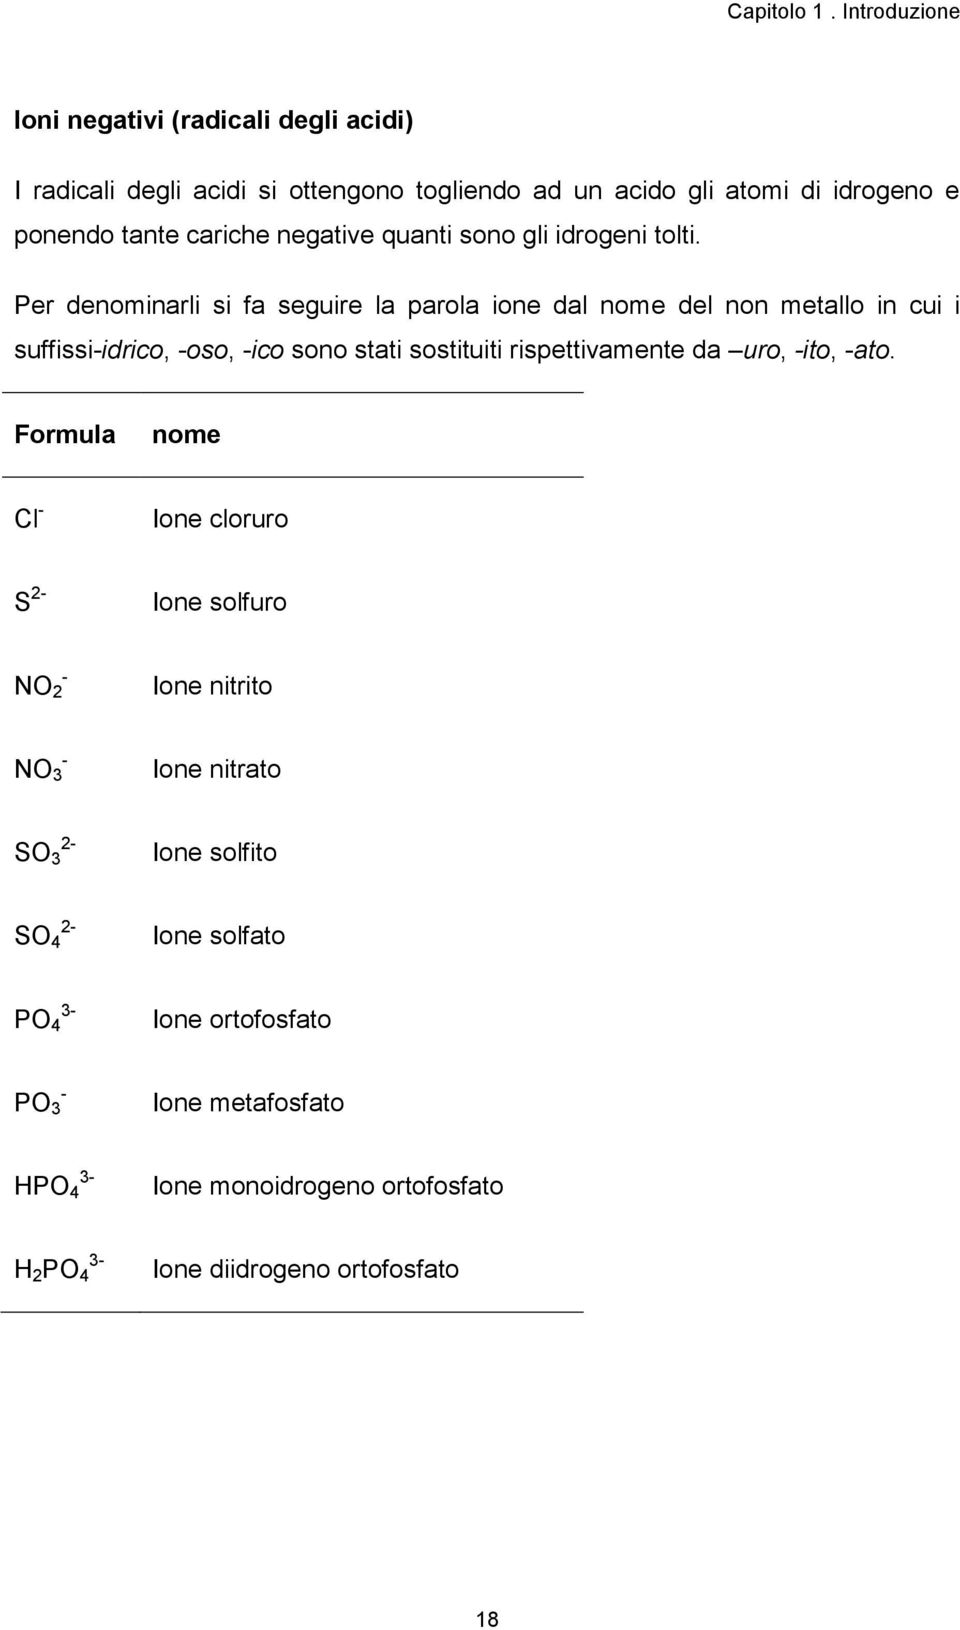 Per denominarli si fa seguire la parola ione dal nome del non metallo in cui i suffissi-idrico, -oso, -ico sono stati sostituiti rispettivamente da